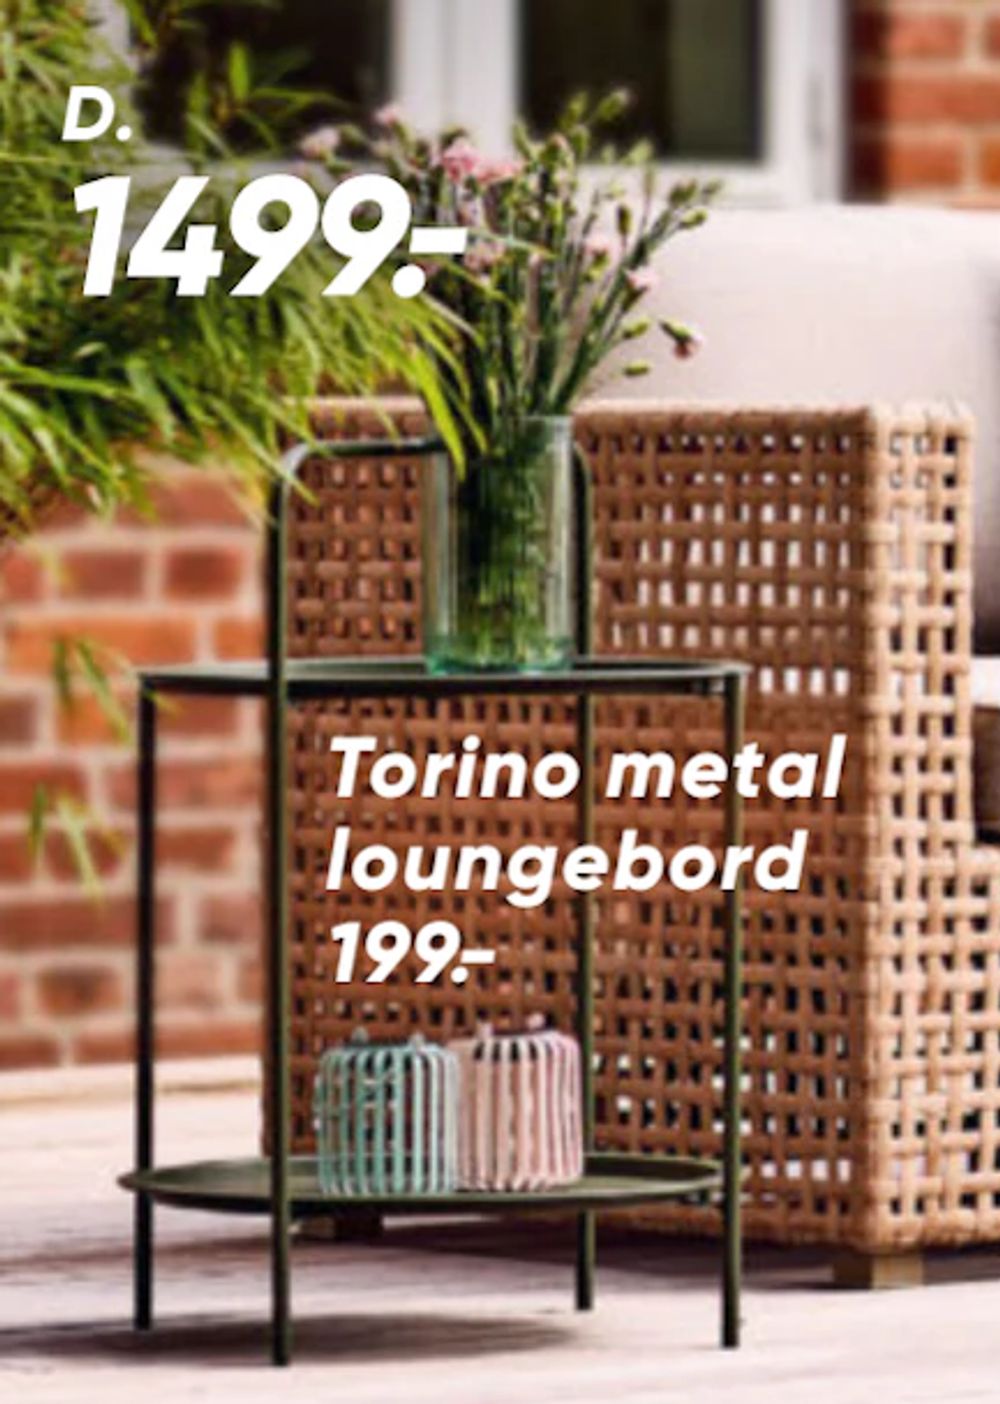 Tilbud på Torino metal loungebord fra Bilka til 199 kr.